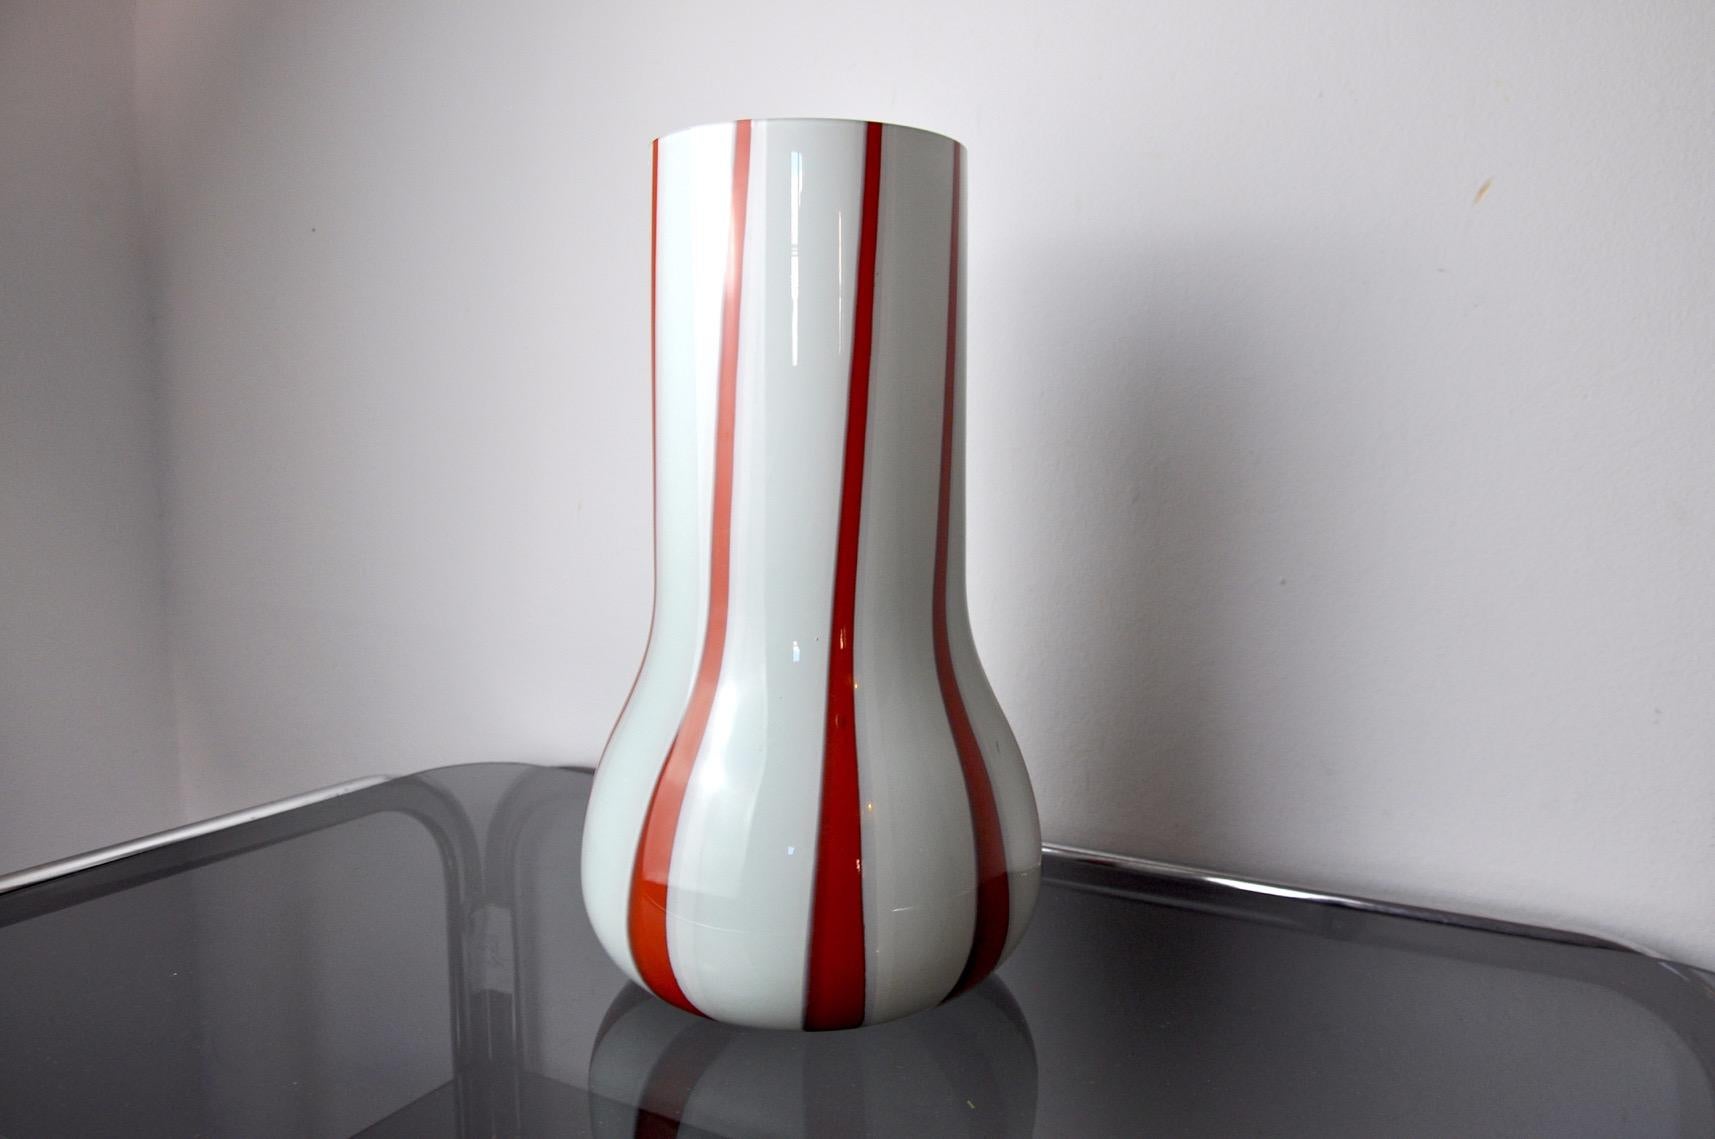 Sehr schöne und große Lollipop-Vase, entworfen und hergestellt von Glasmachermeistern in Muranio, Italien, in den 1960er Jahren. Große Vase, rot und weiß. Sehr schönes Designobjekt, das Ihr Interieur wunderbar schmücken wird. Perfekter Zustand der